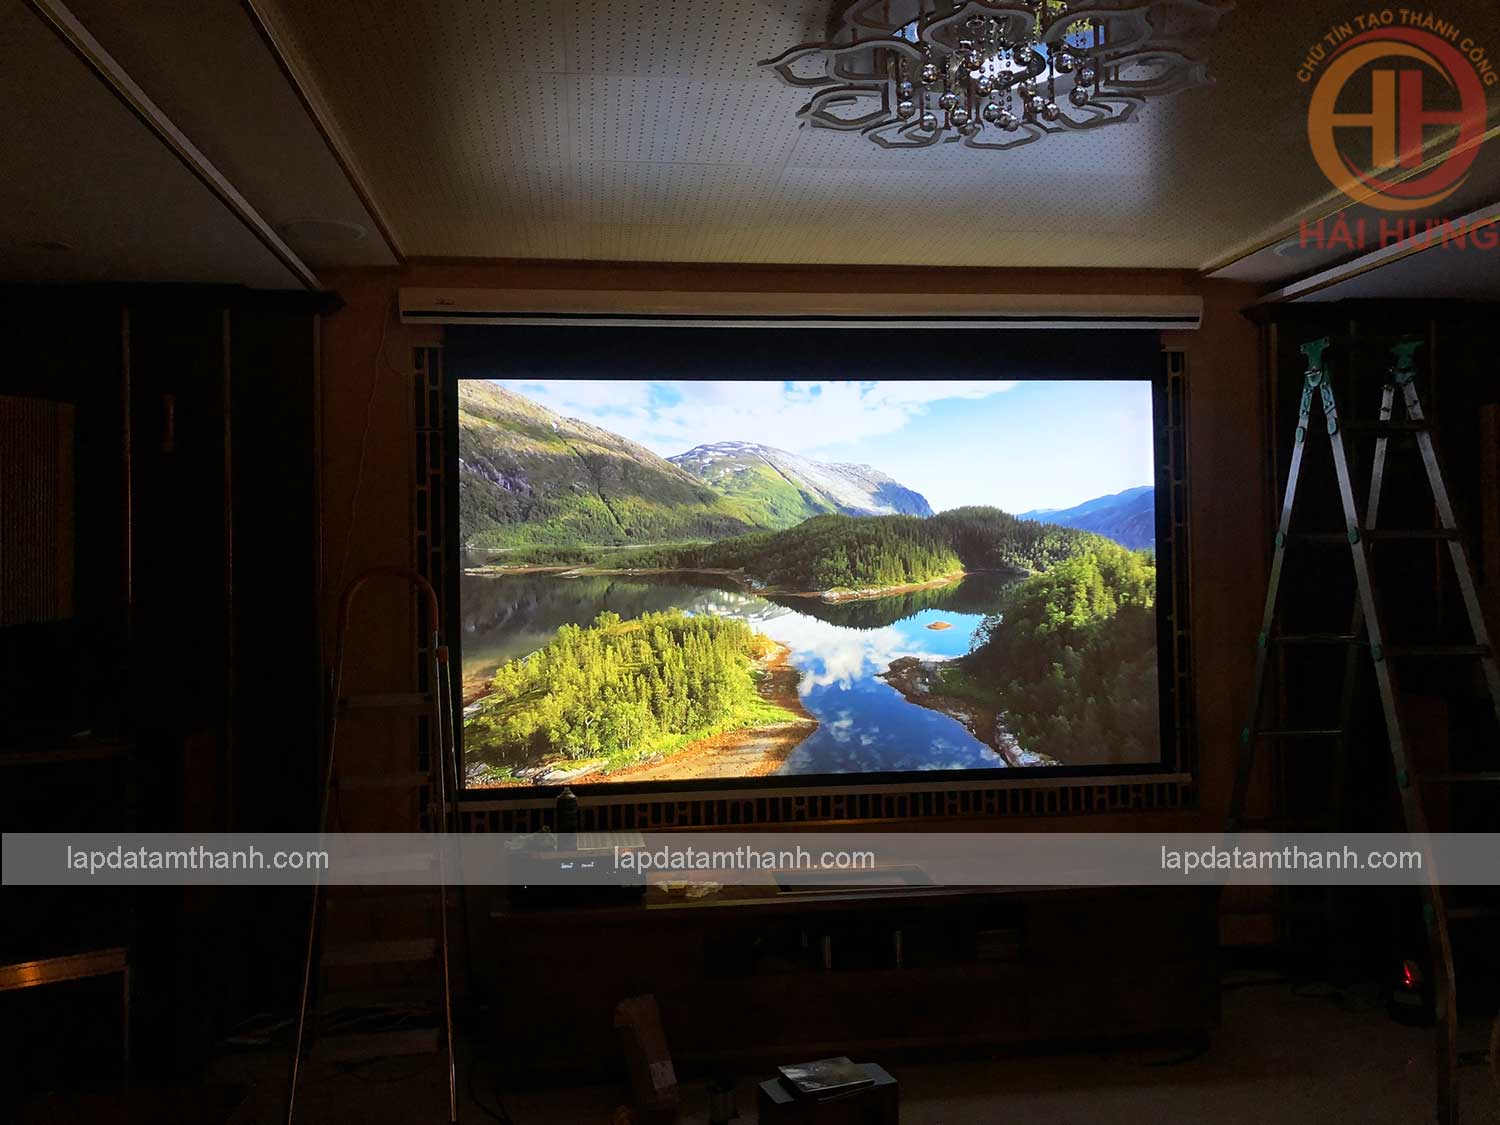 Lắp đặt hệ thống máy chiếu phim gia đình cực đỉnh cho nhà chú Hải Vũ Tông Phan